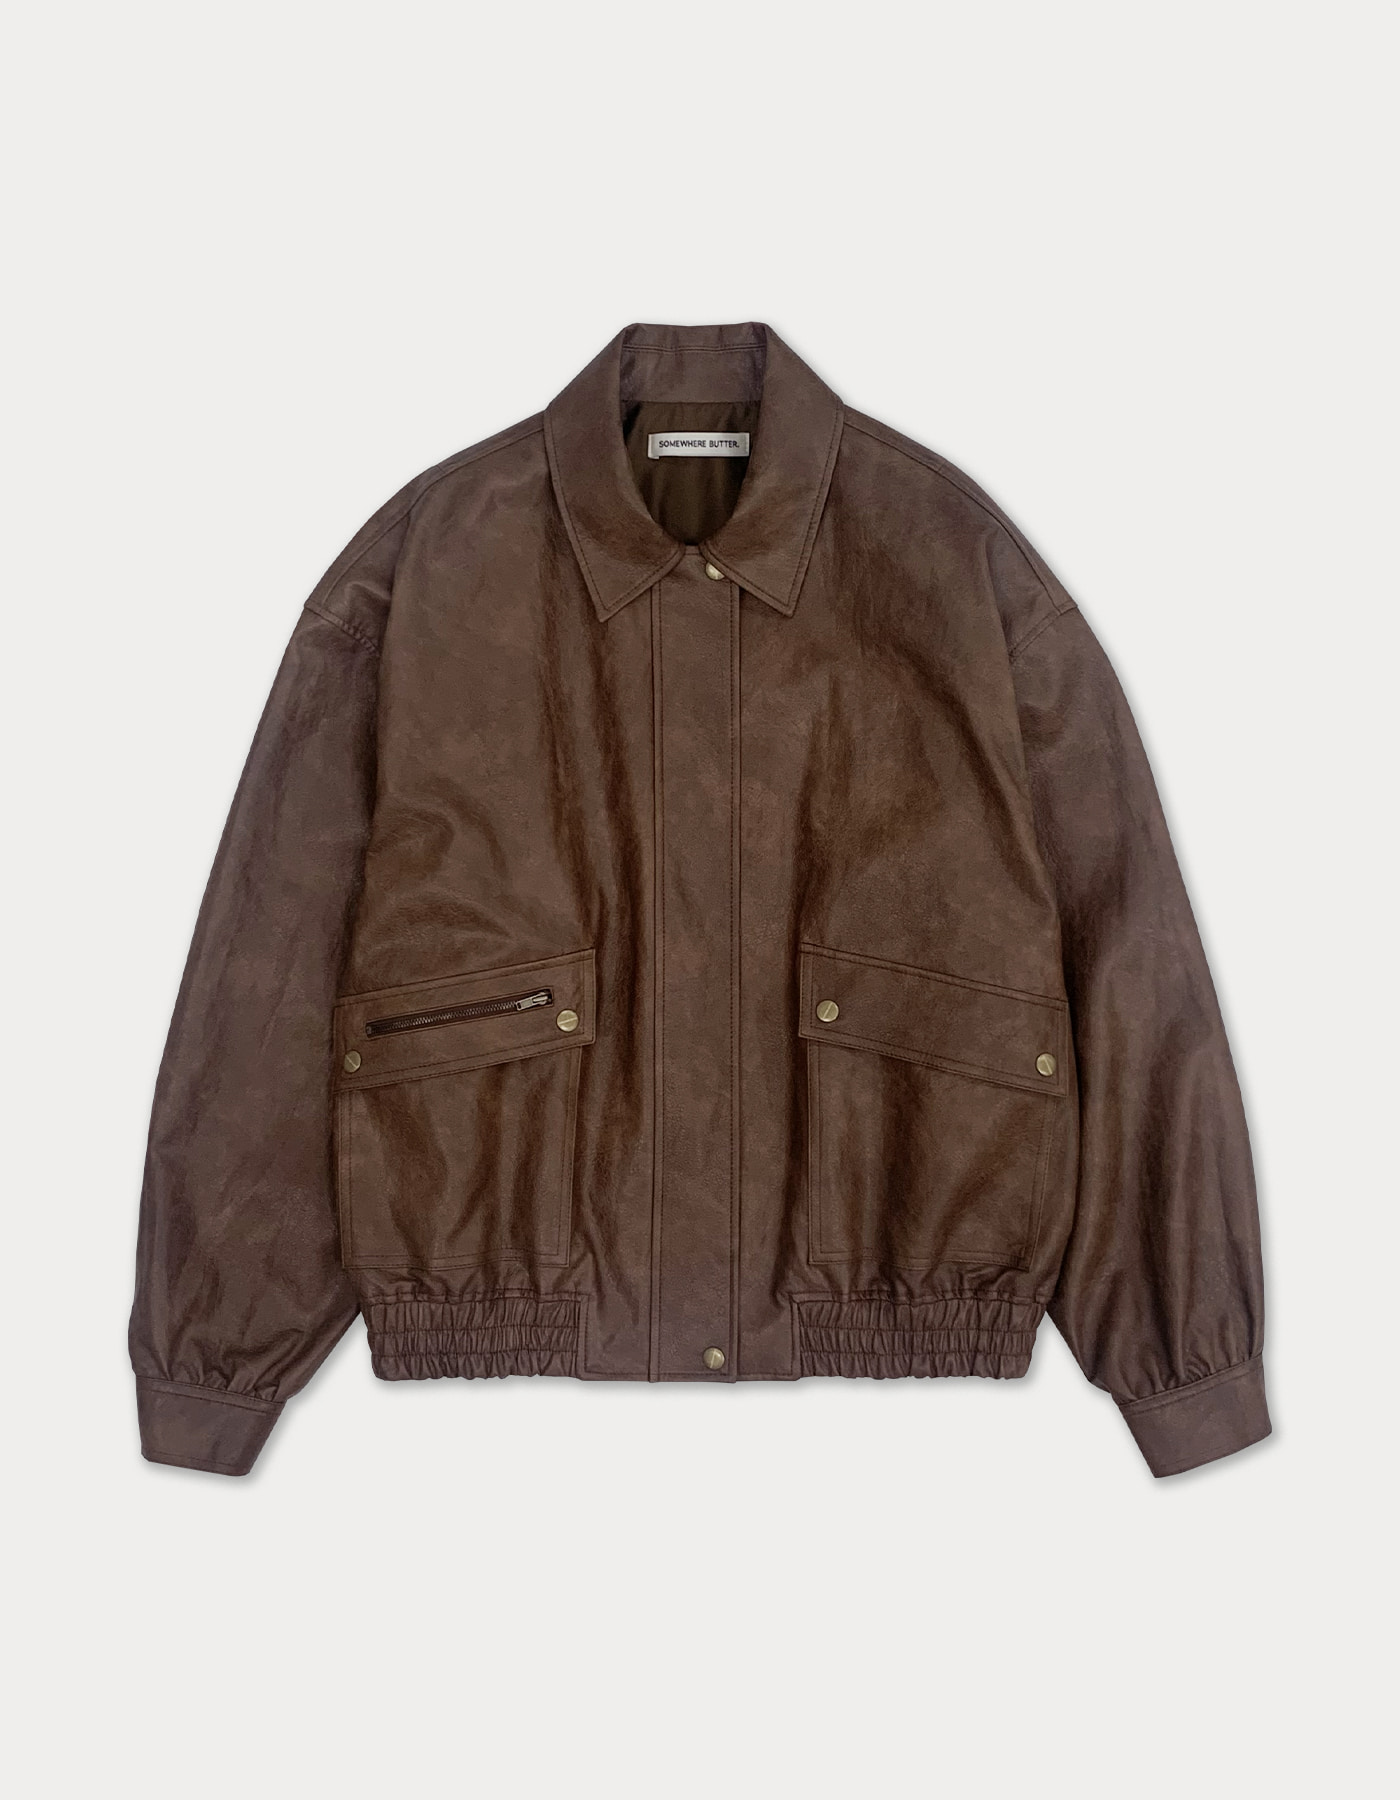 western leather jacket - vintage brown